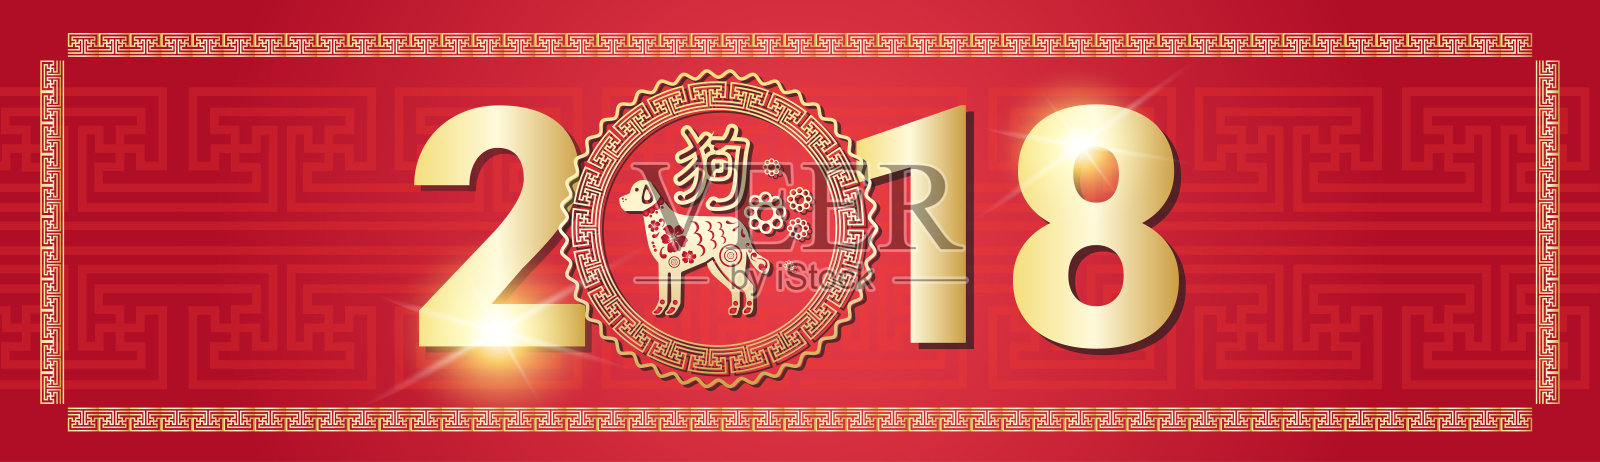 美丽的中国新年装饰海报2018狗生肖象征红色背景设计模板素材